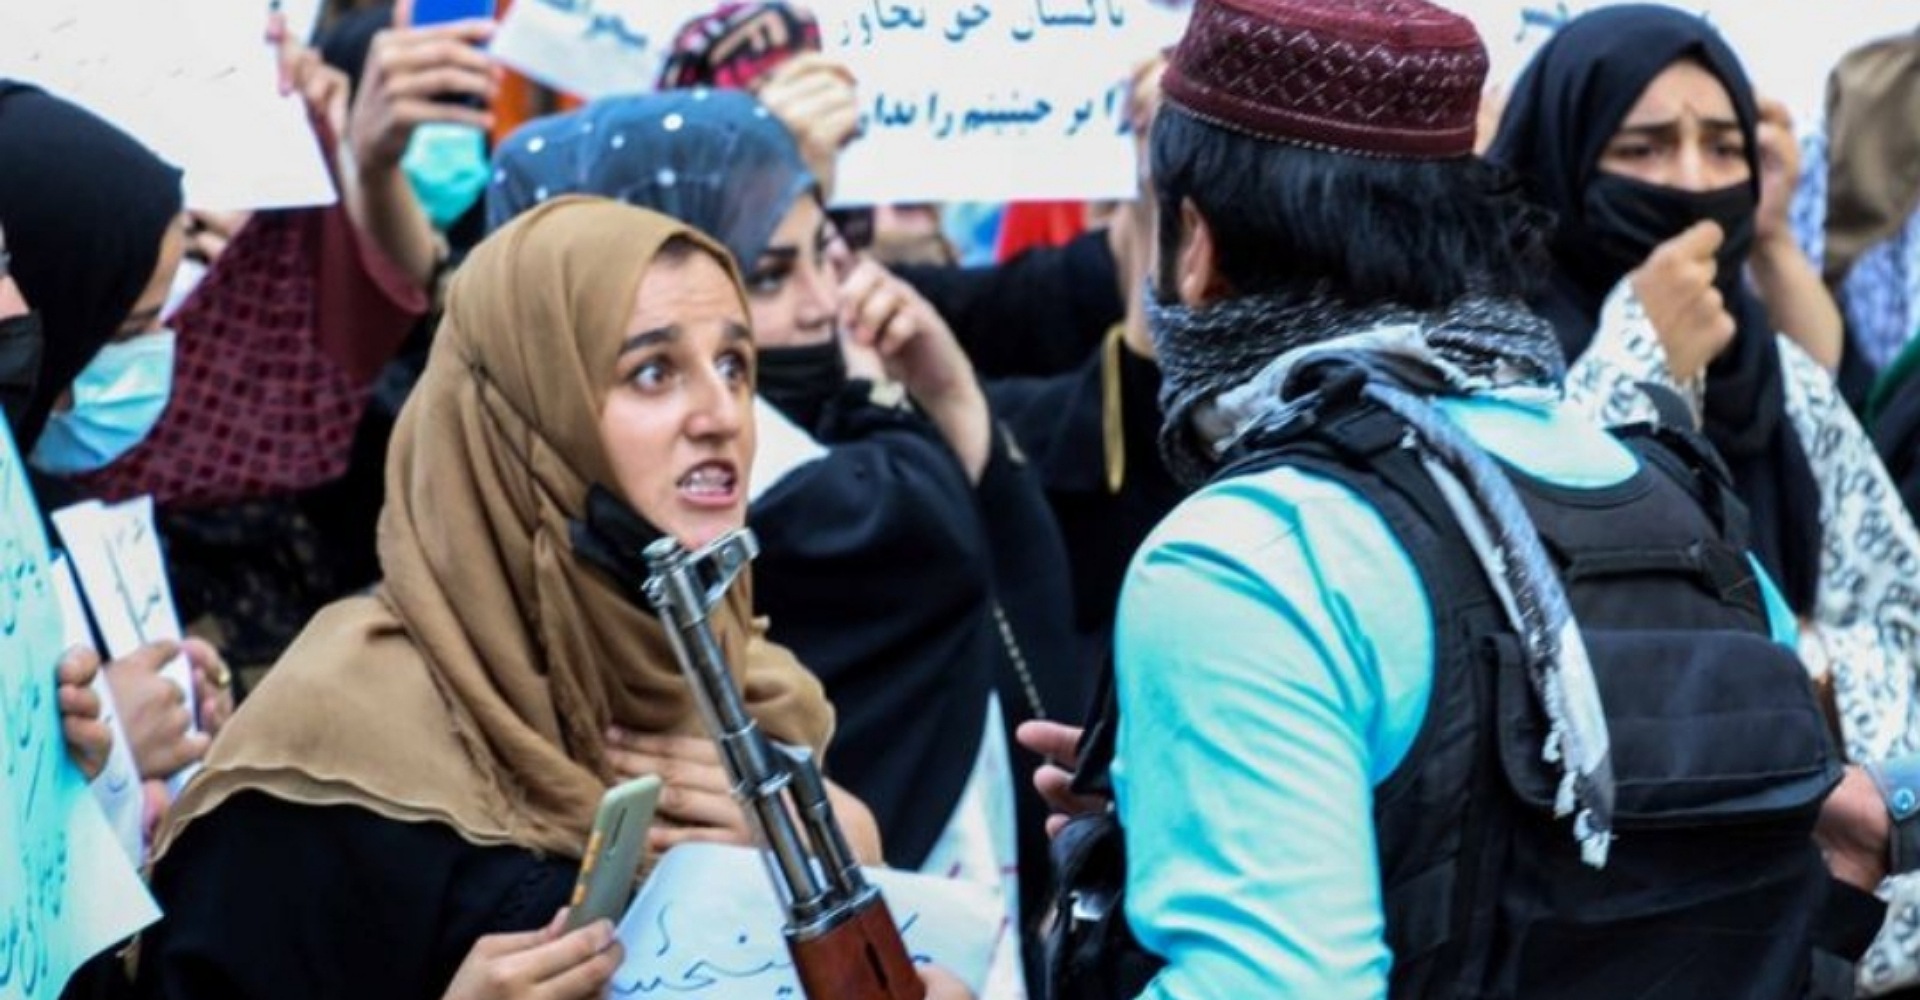 पुरुषमात्रै भएको तालिबान सरकारको विरोधमा महिलाको प्रदर्शन